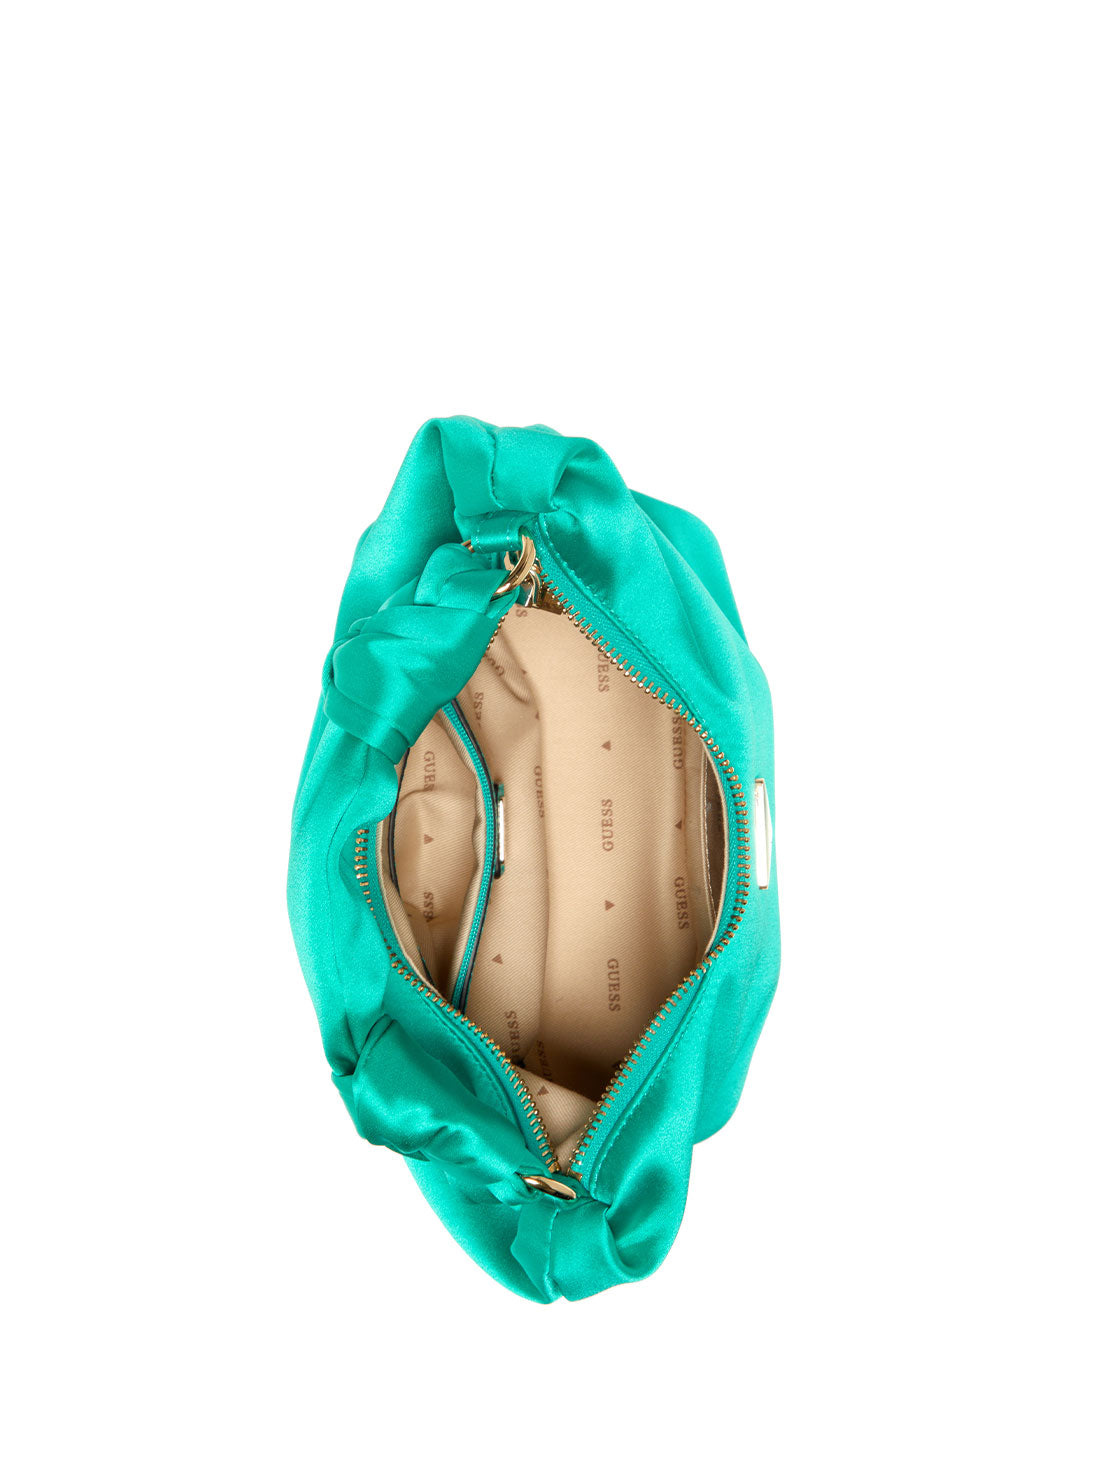 Green Velina Hobo Bag | GUESS Women's Handbags | inside view